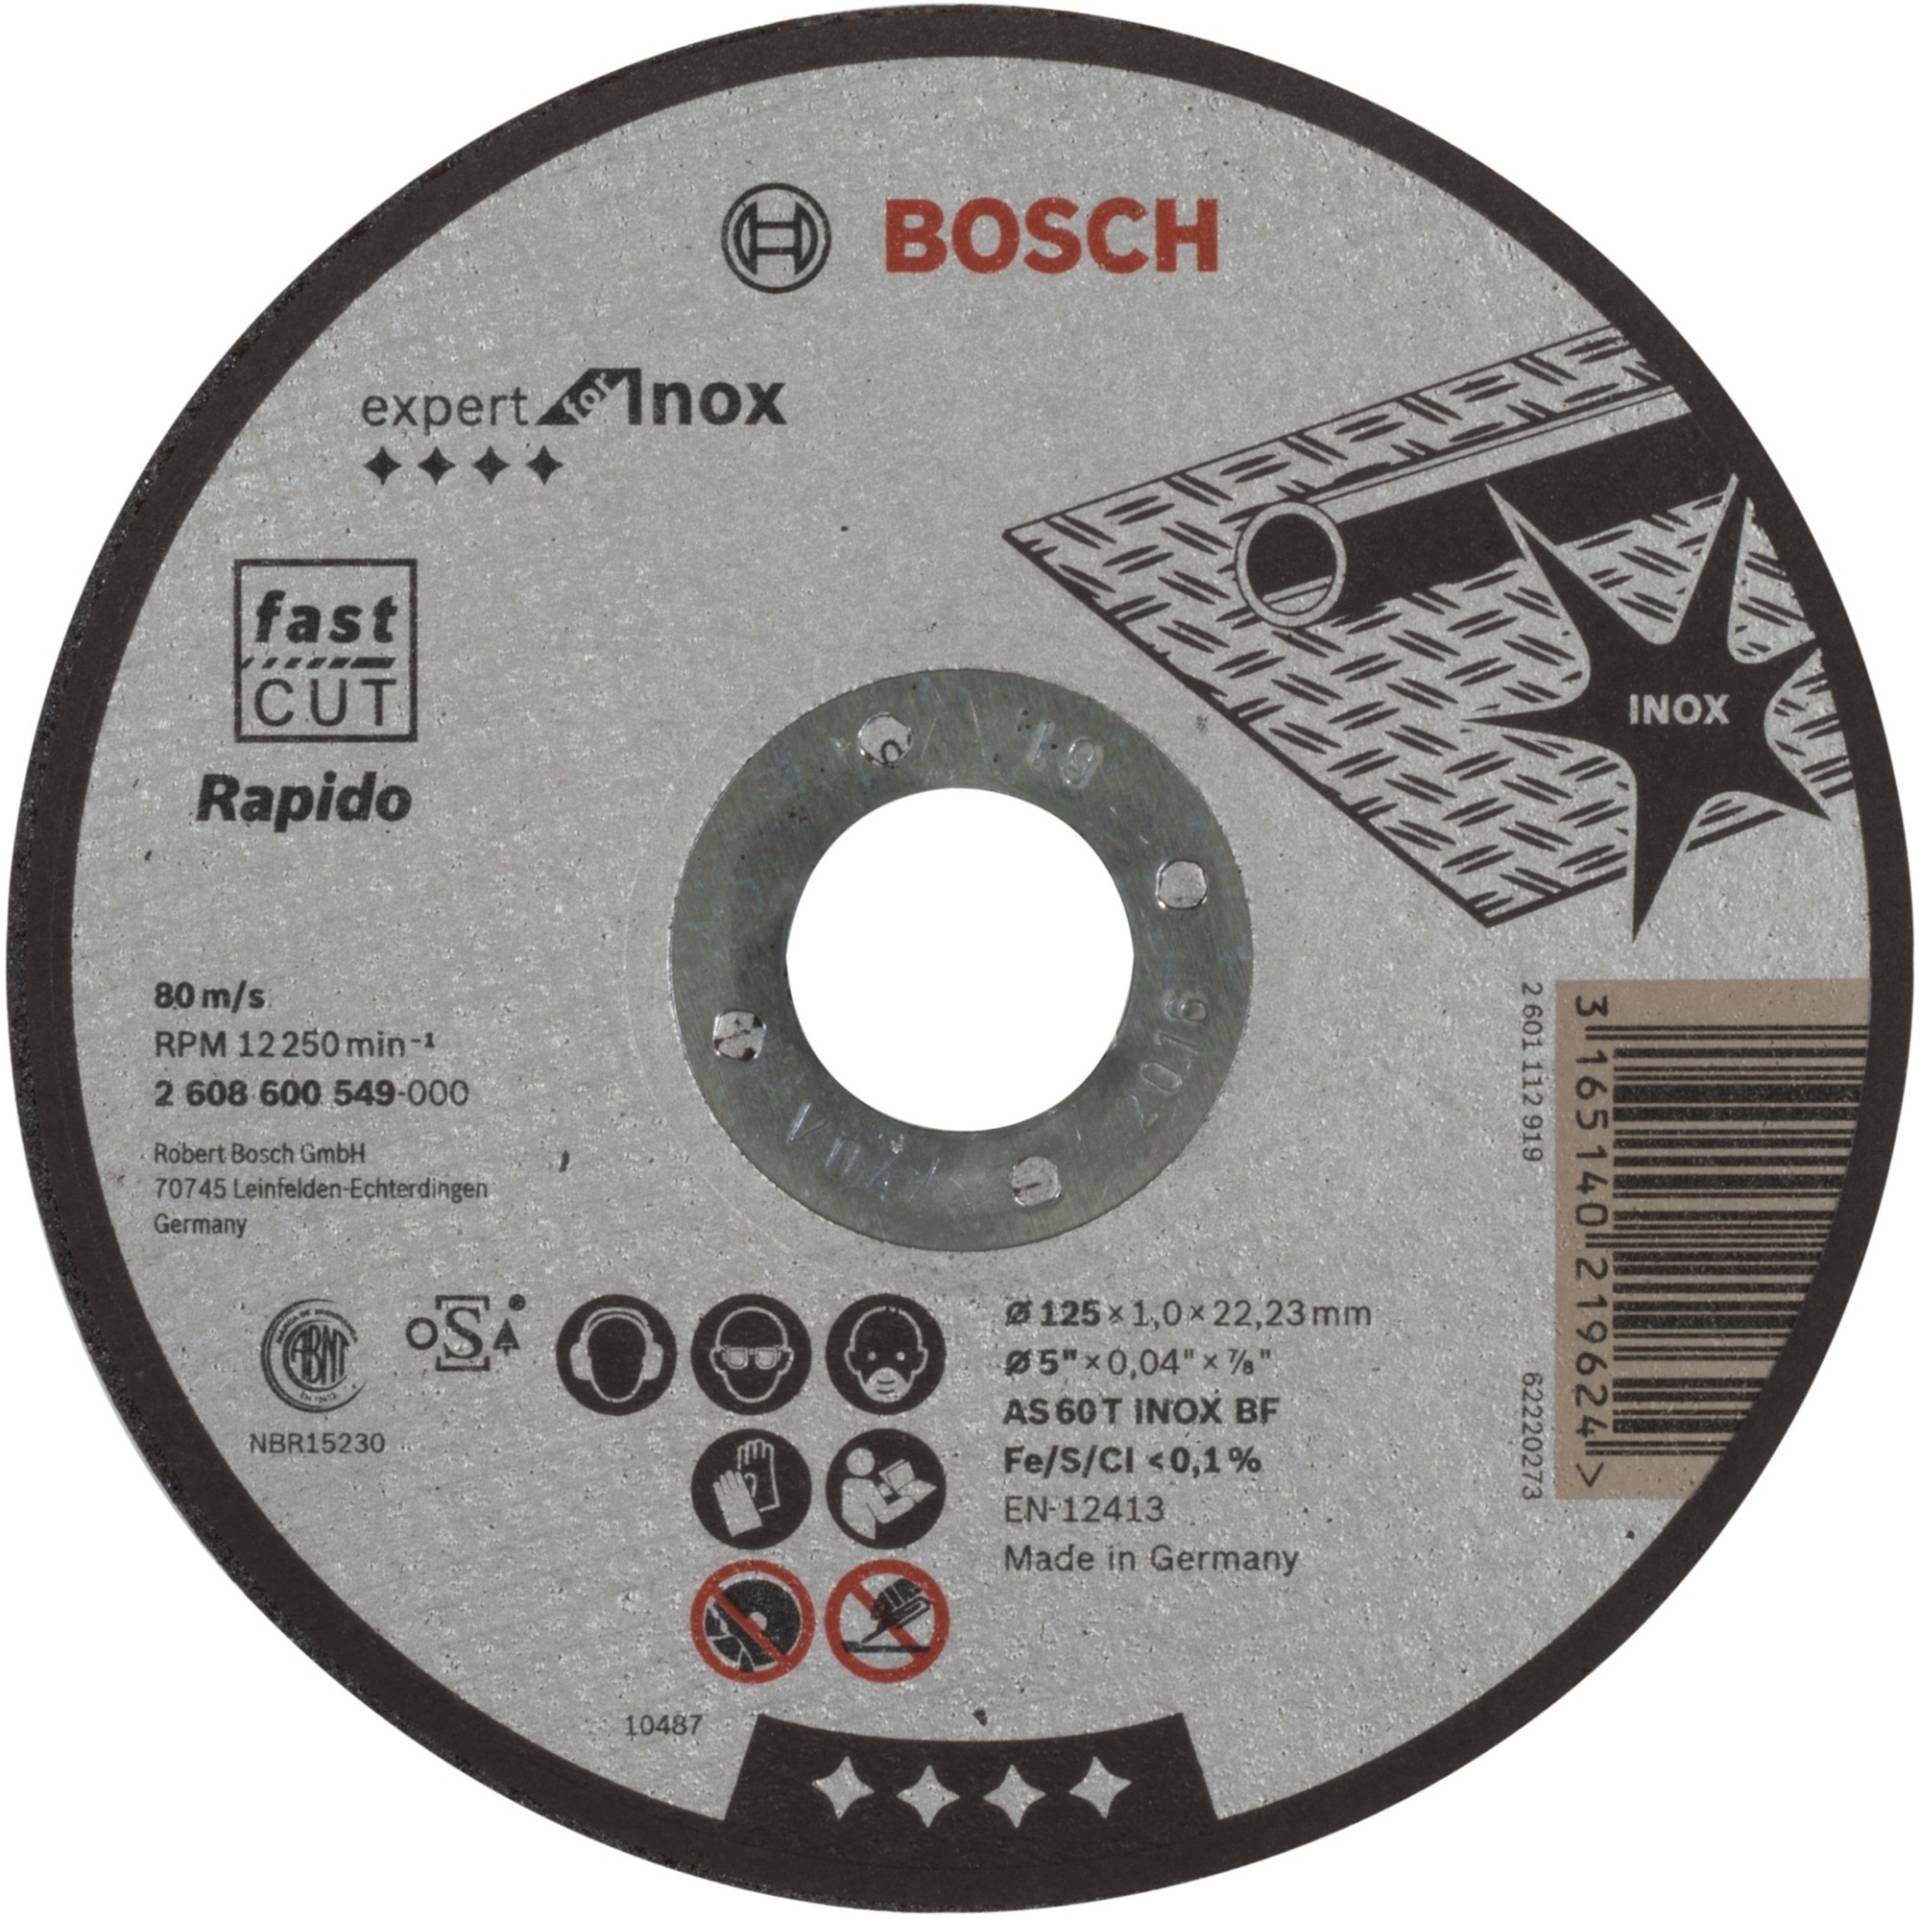 Trennscheibe Expert for Inox - Rapido, Ø 125mm von Bosch